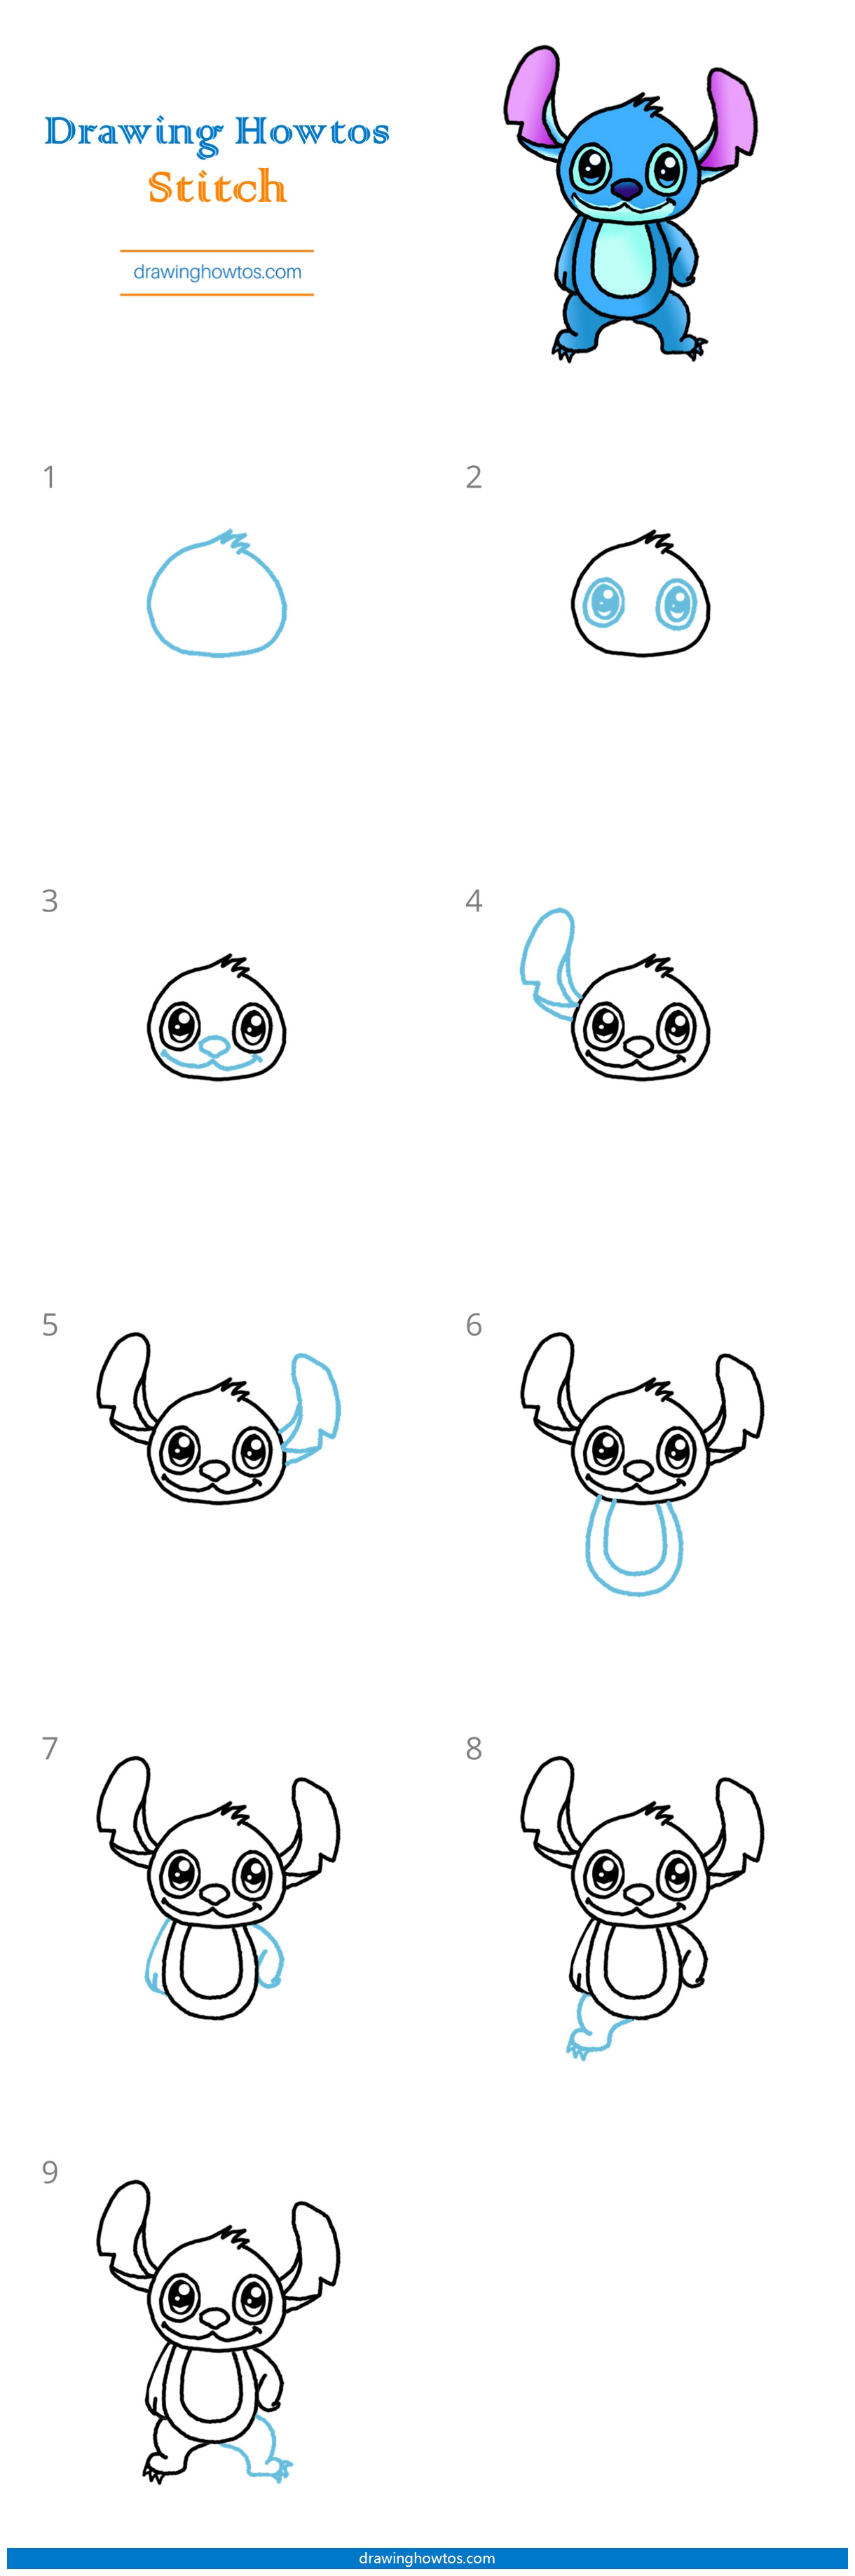 How to Draw Stitch Step by Step